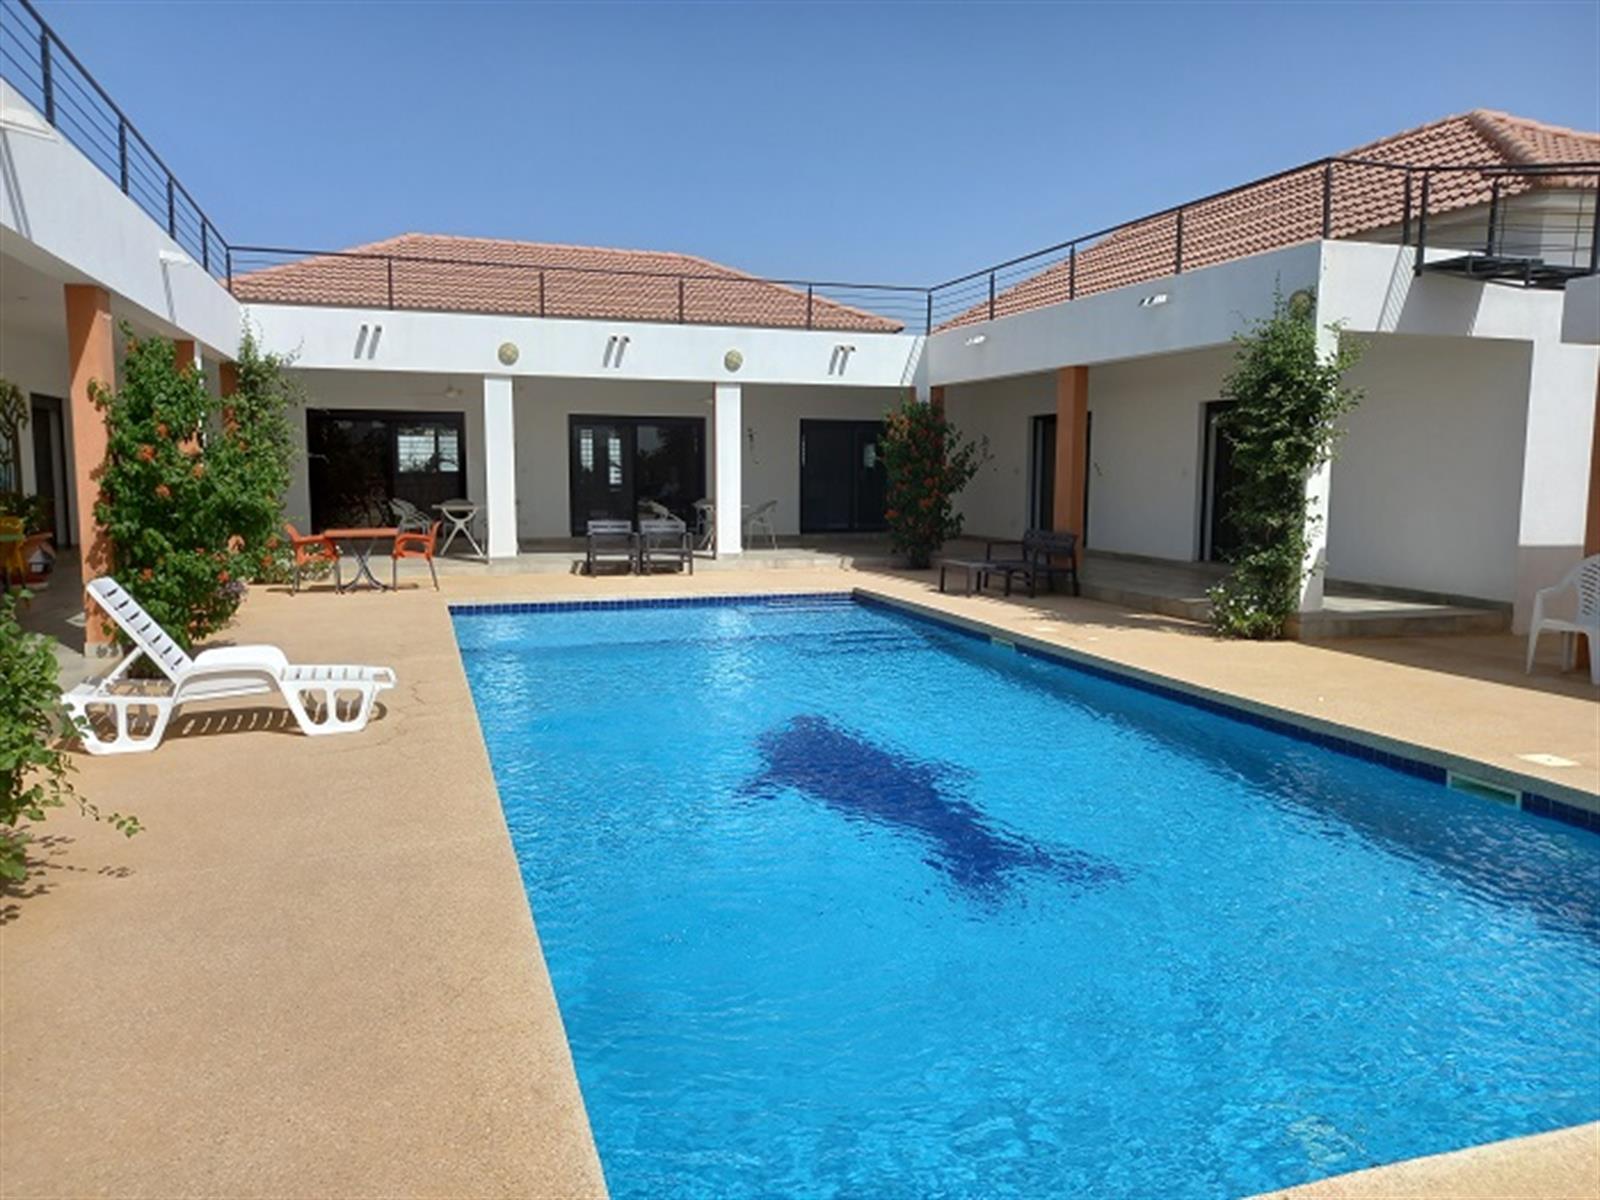 Jolie villa r�cente offrant de beaux espaces de vie avec piscine